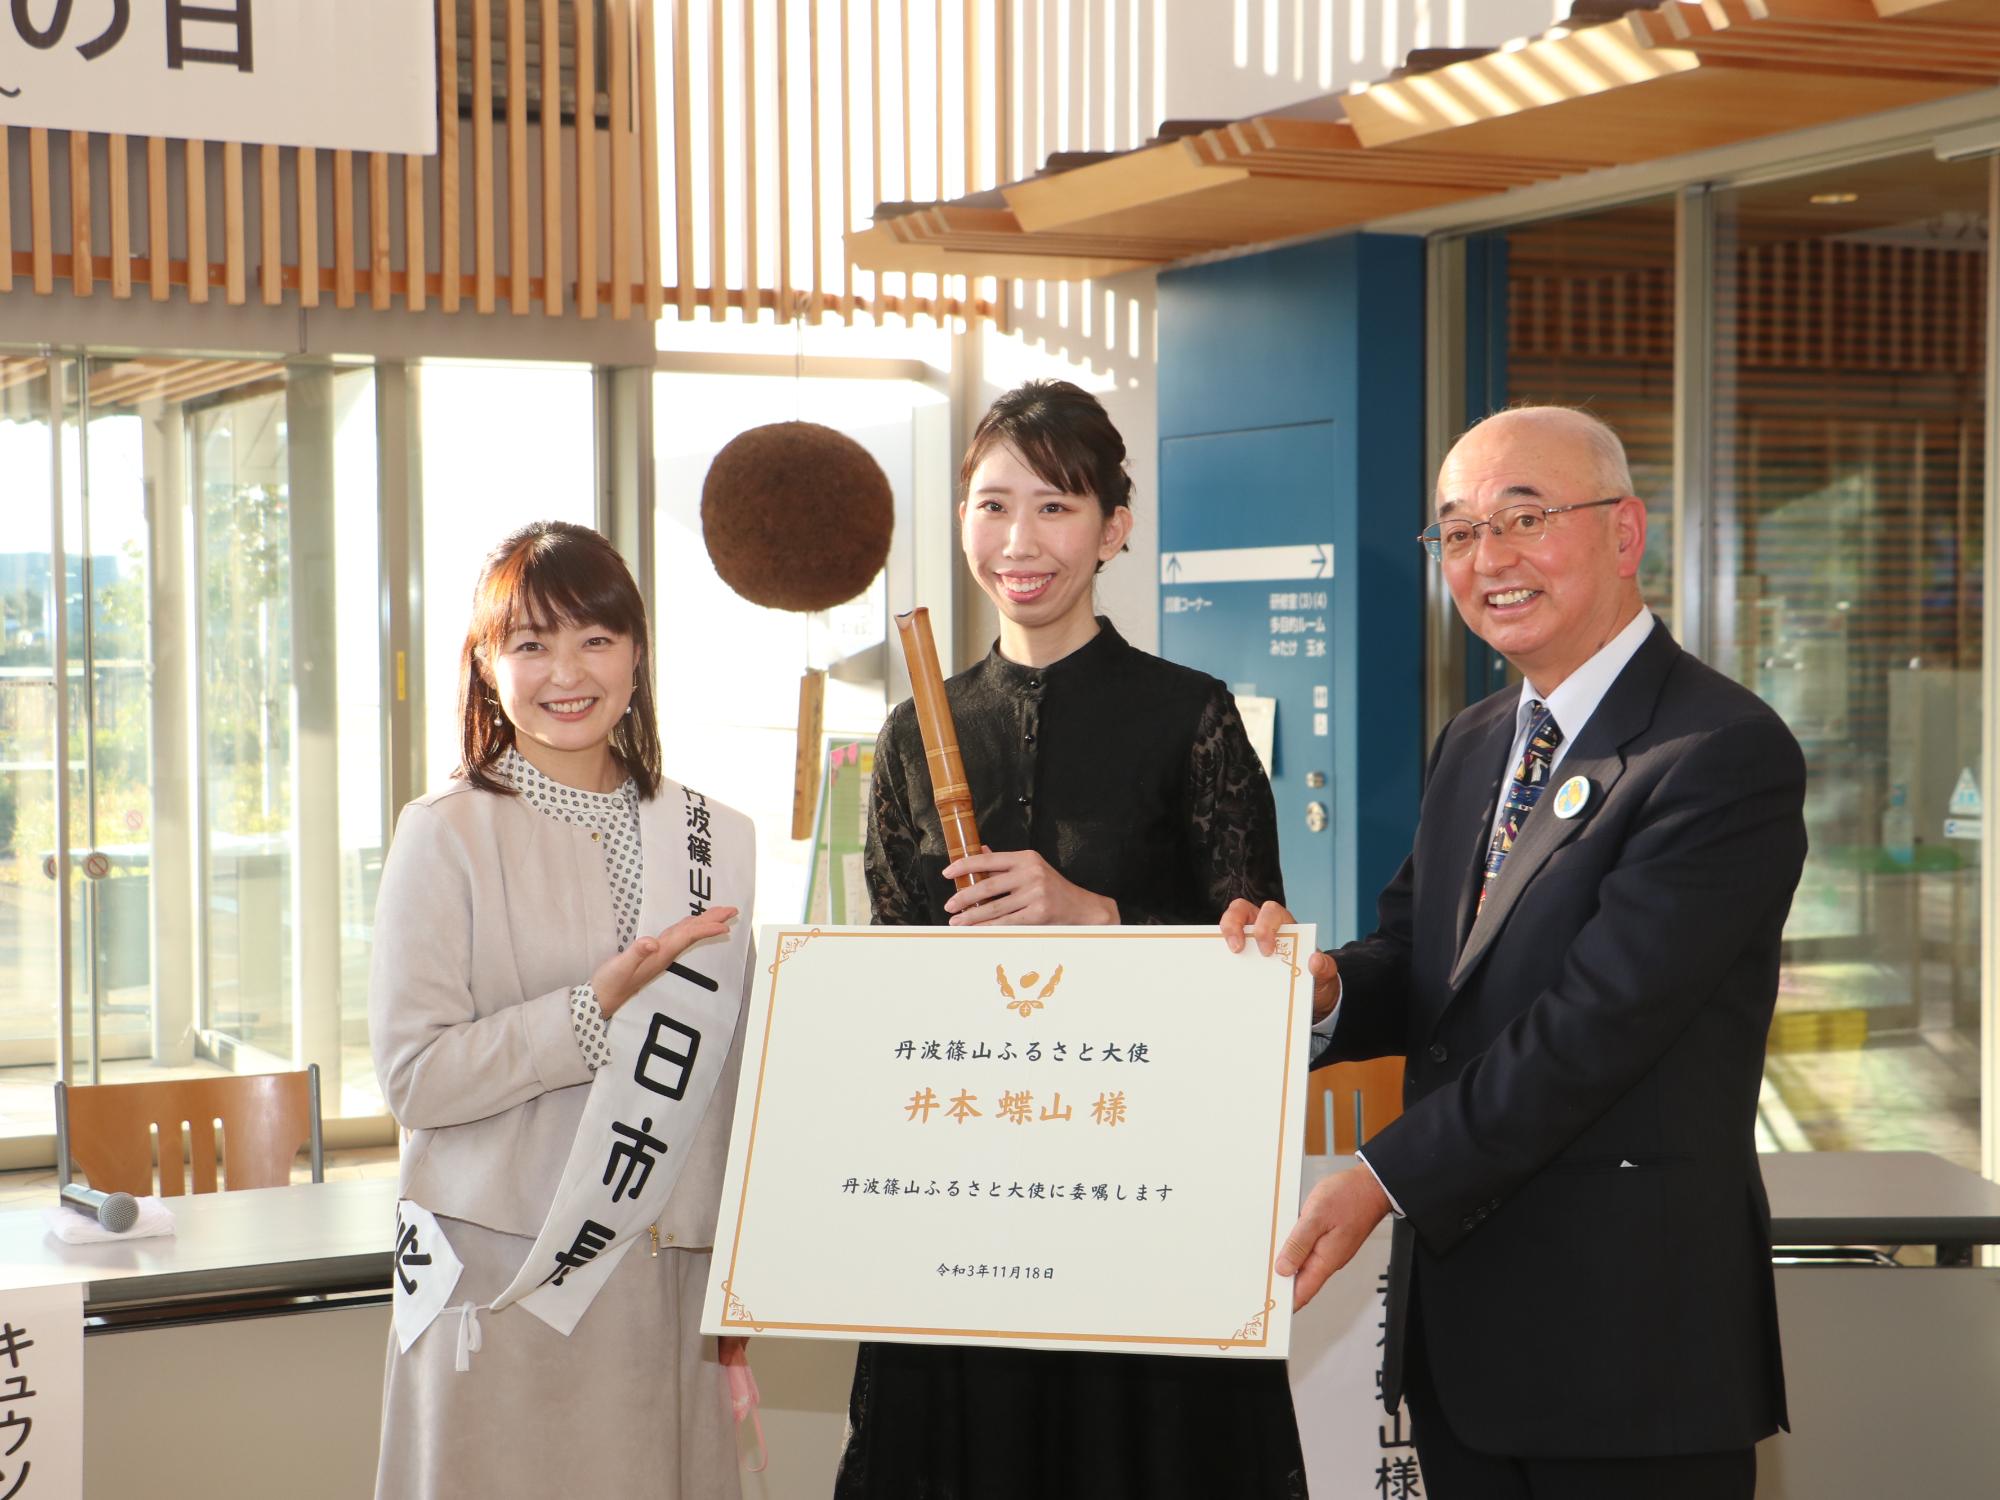 一日市長の熊谷さん、尺八を持った井本さん、井本さんへの大きな委嘱状を持った酒井市長との記念撮影